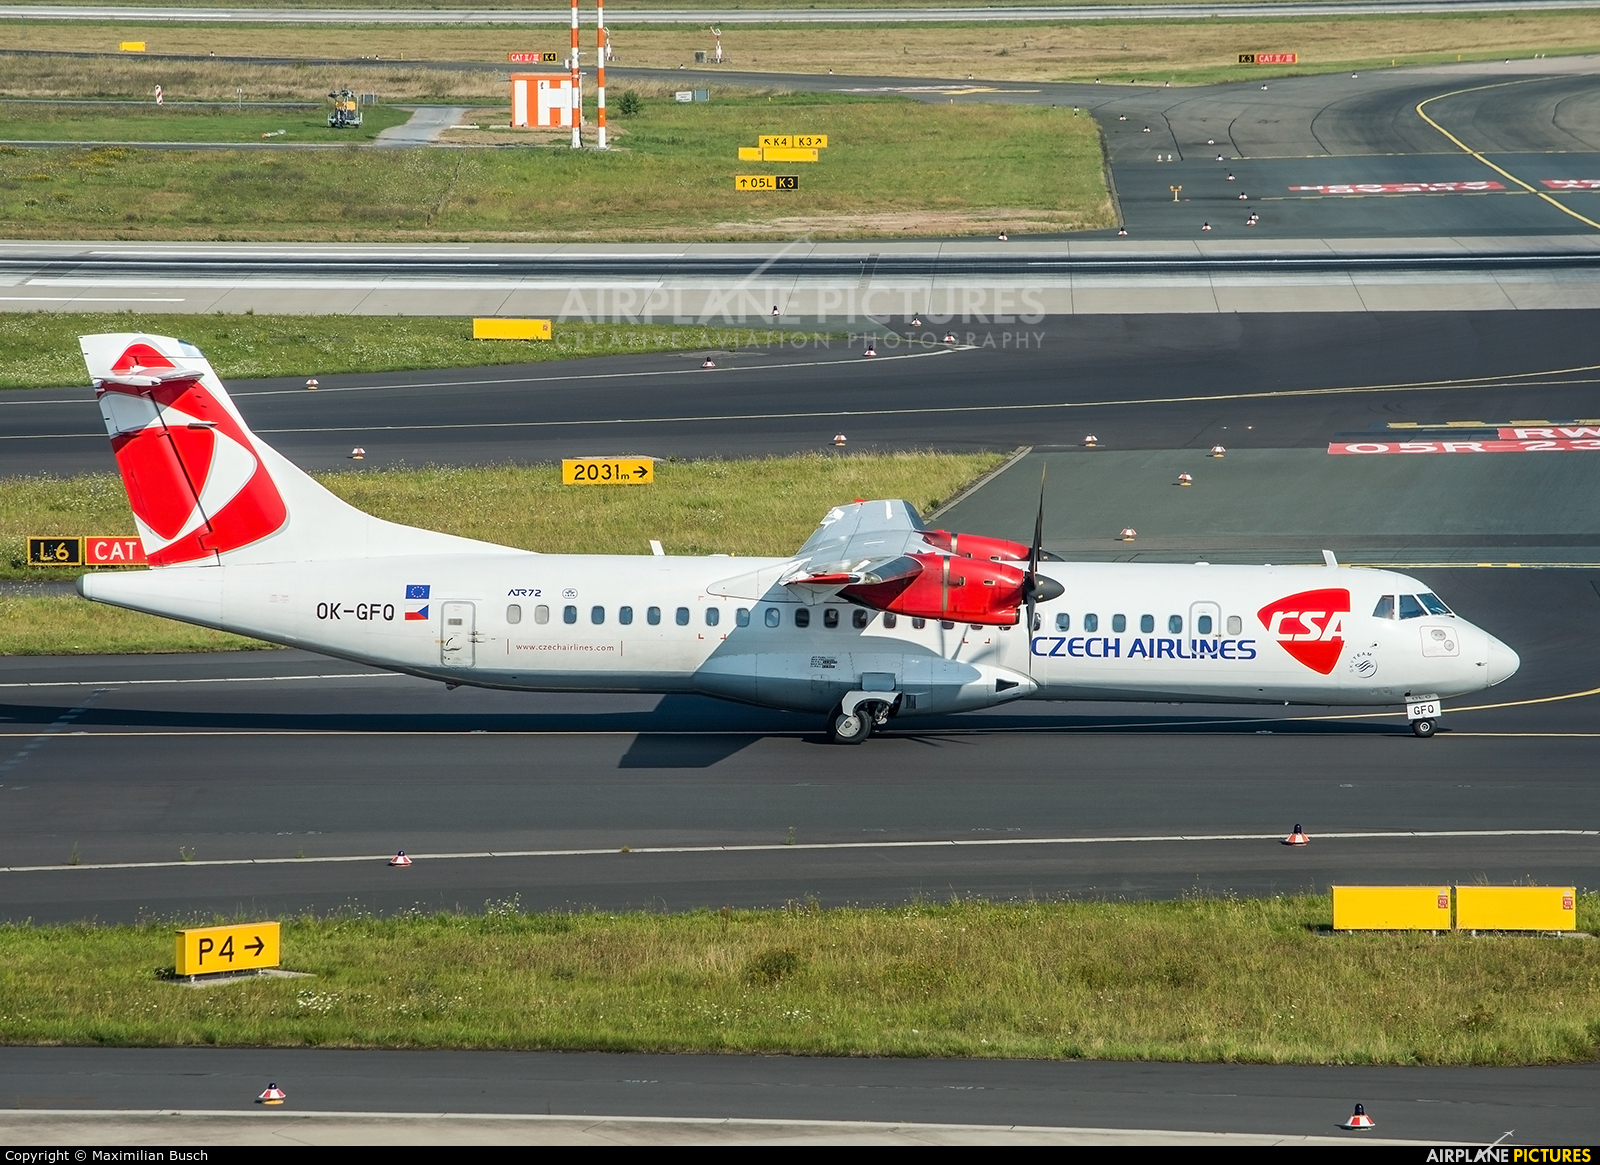 CSA - Czech Airlines OK-GFQ aircraft at Düsseldorf